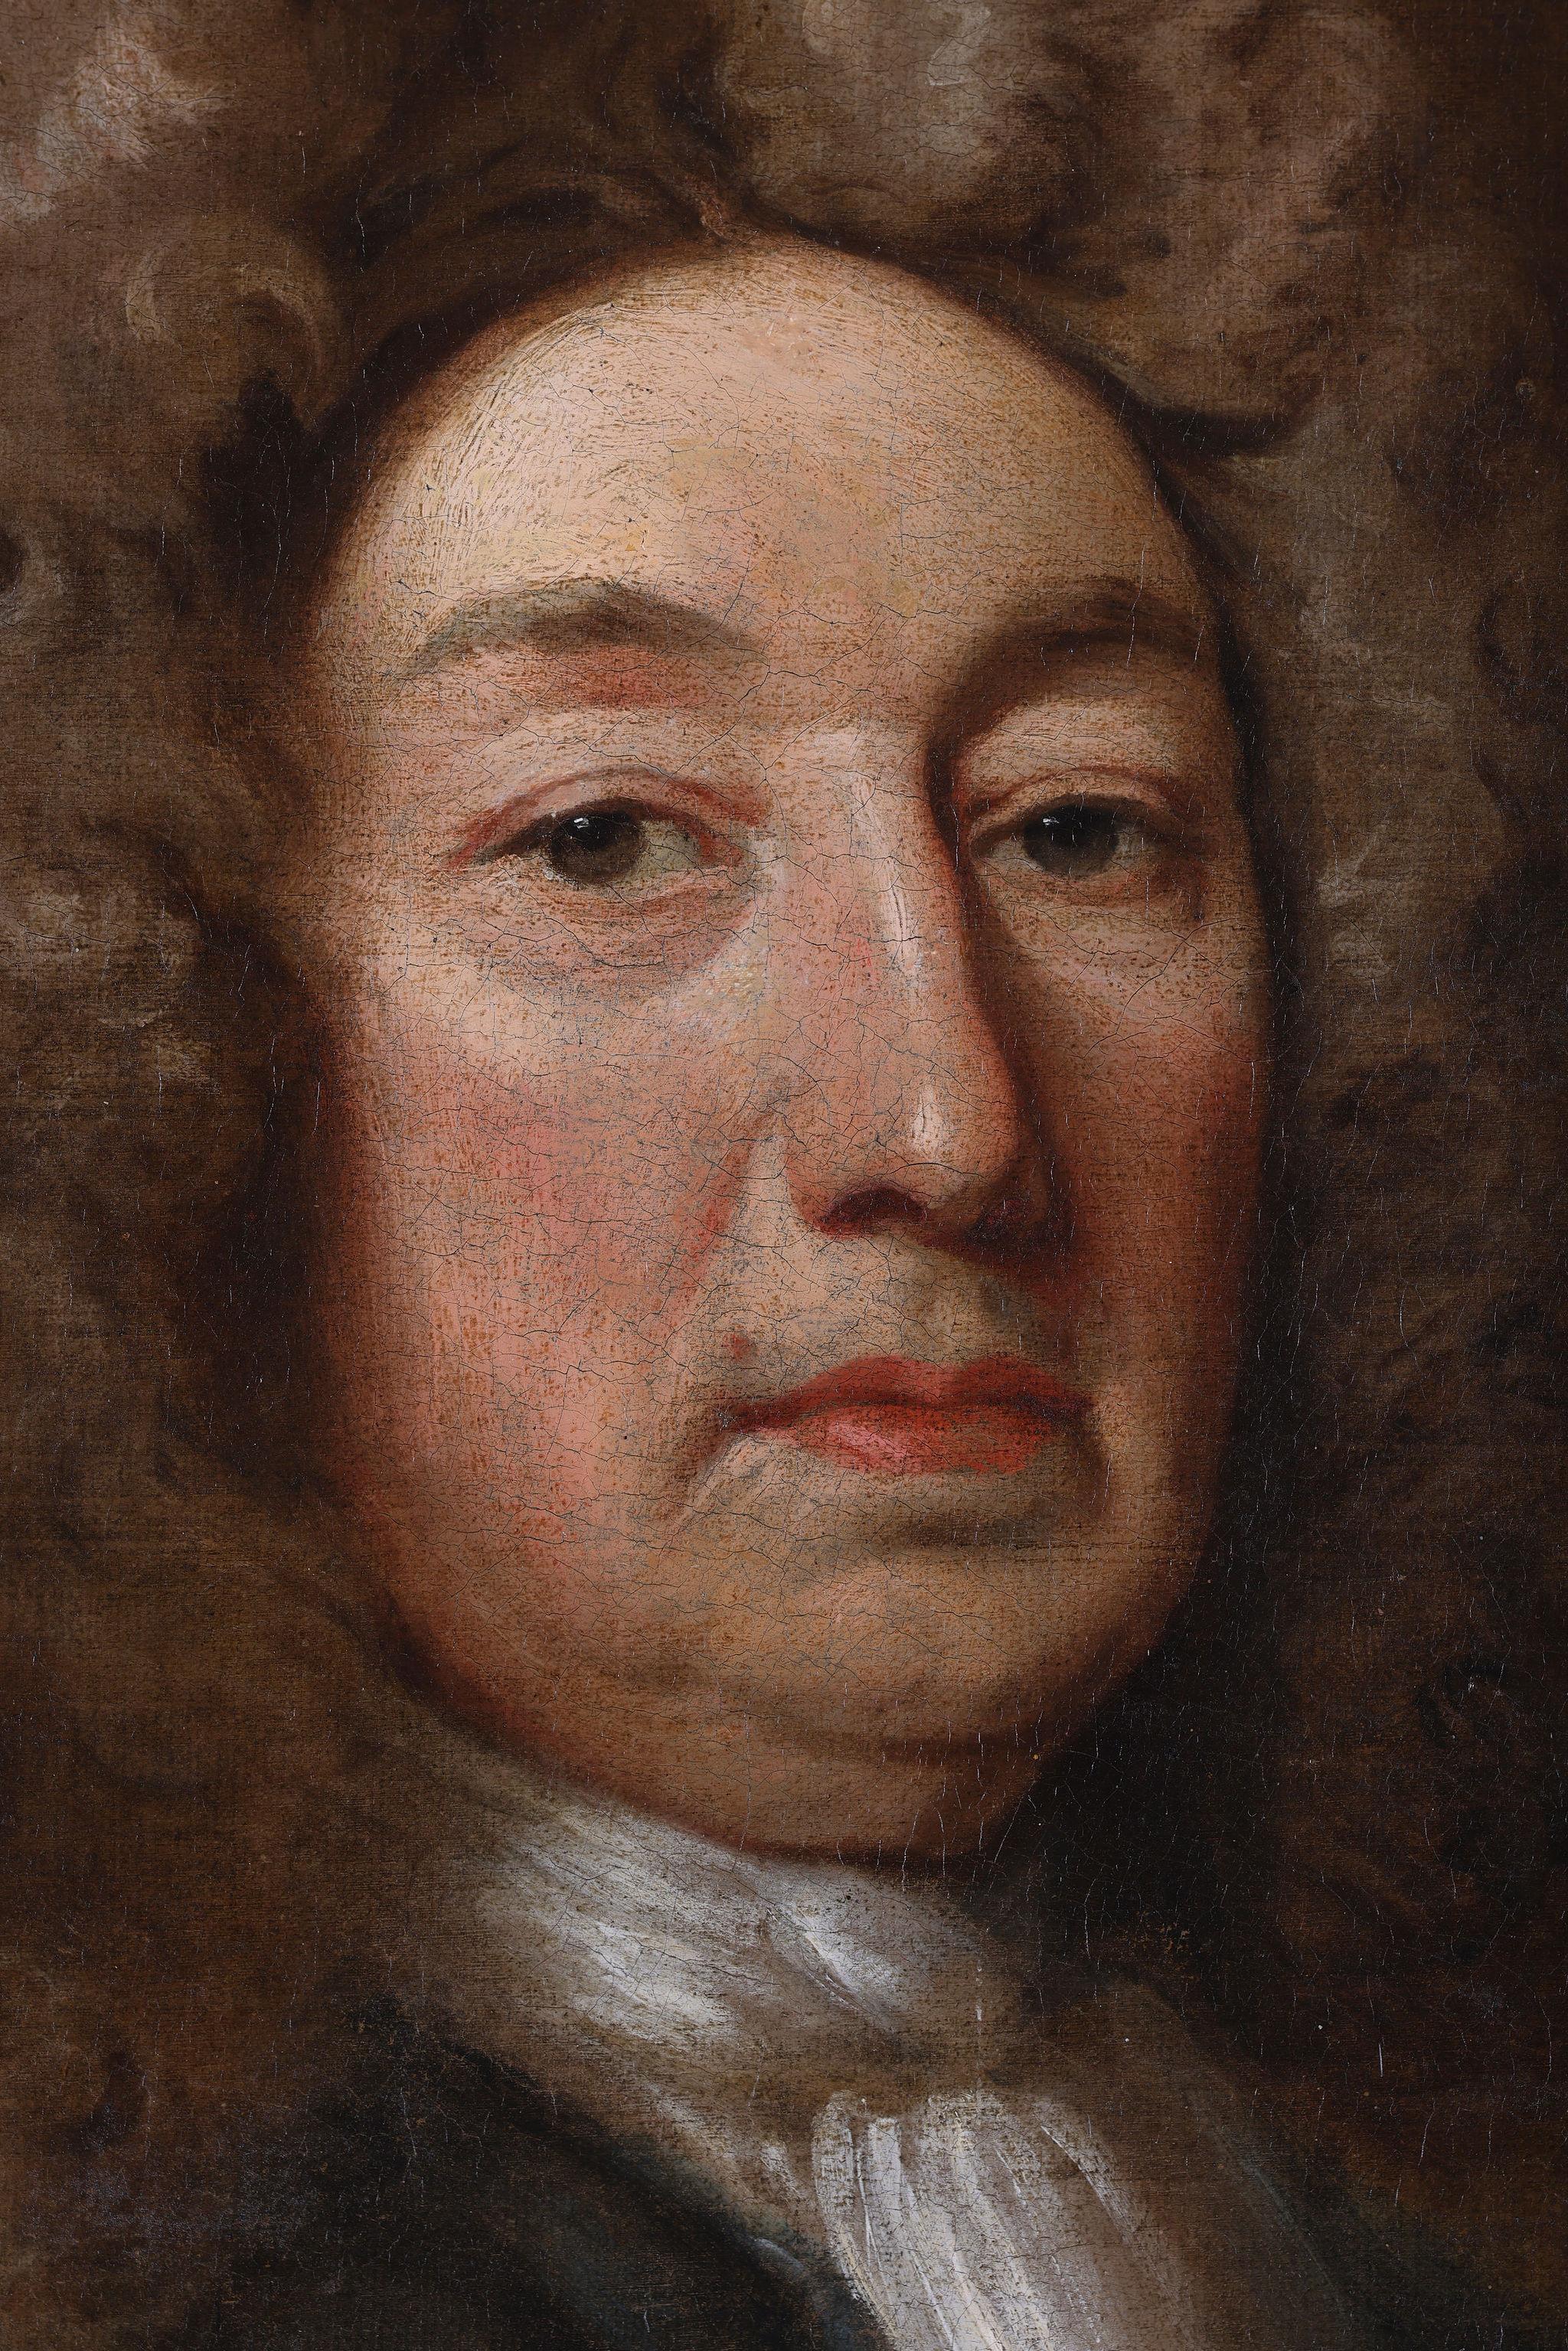 Sir John Wynn, 5th Baronet
Canvas Size: 50 x 40